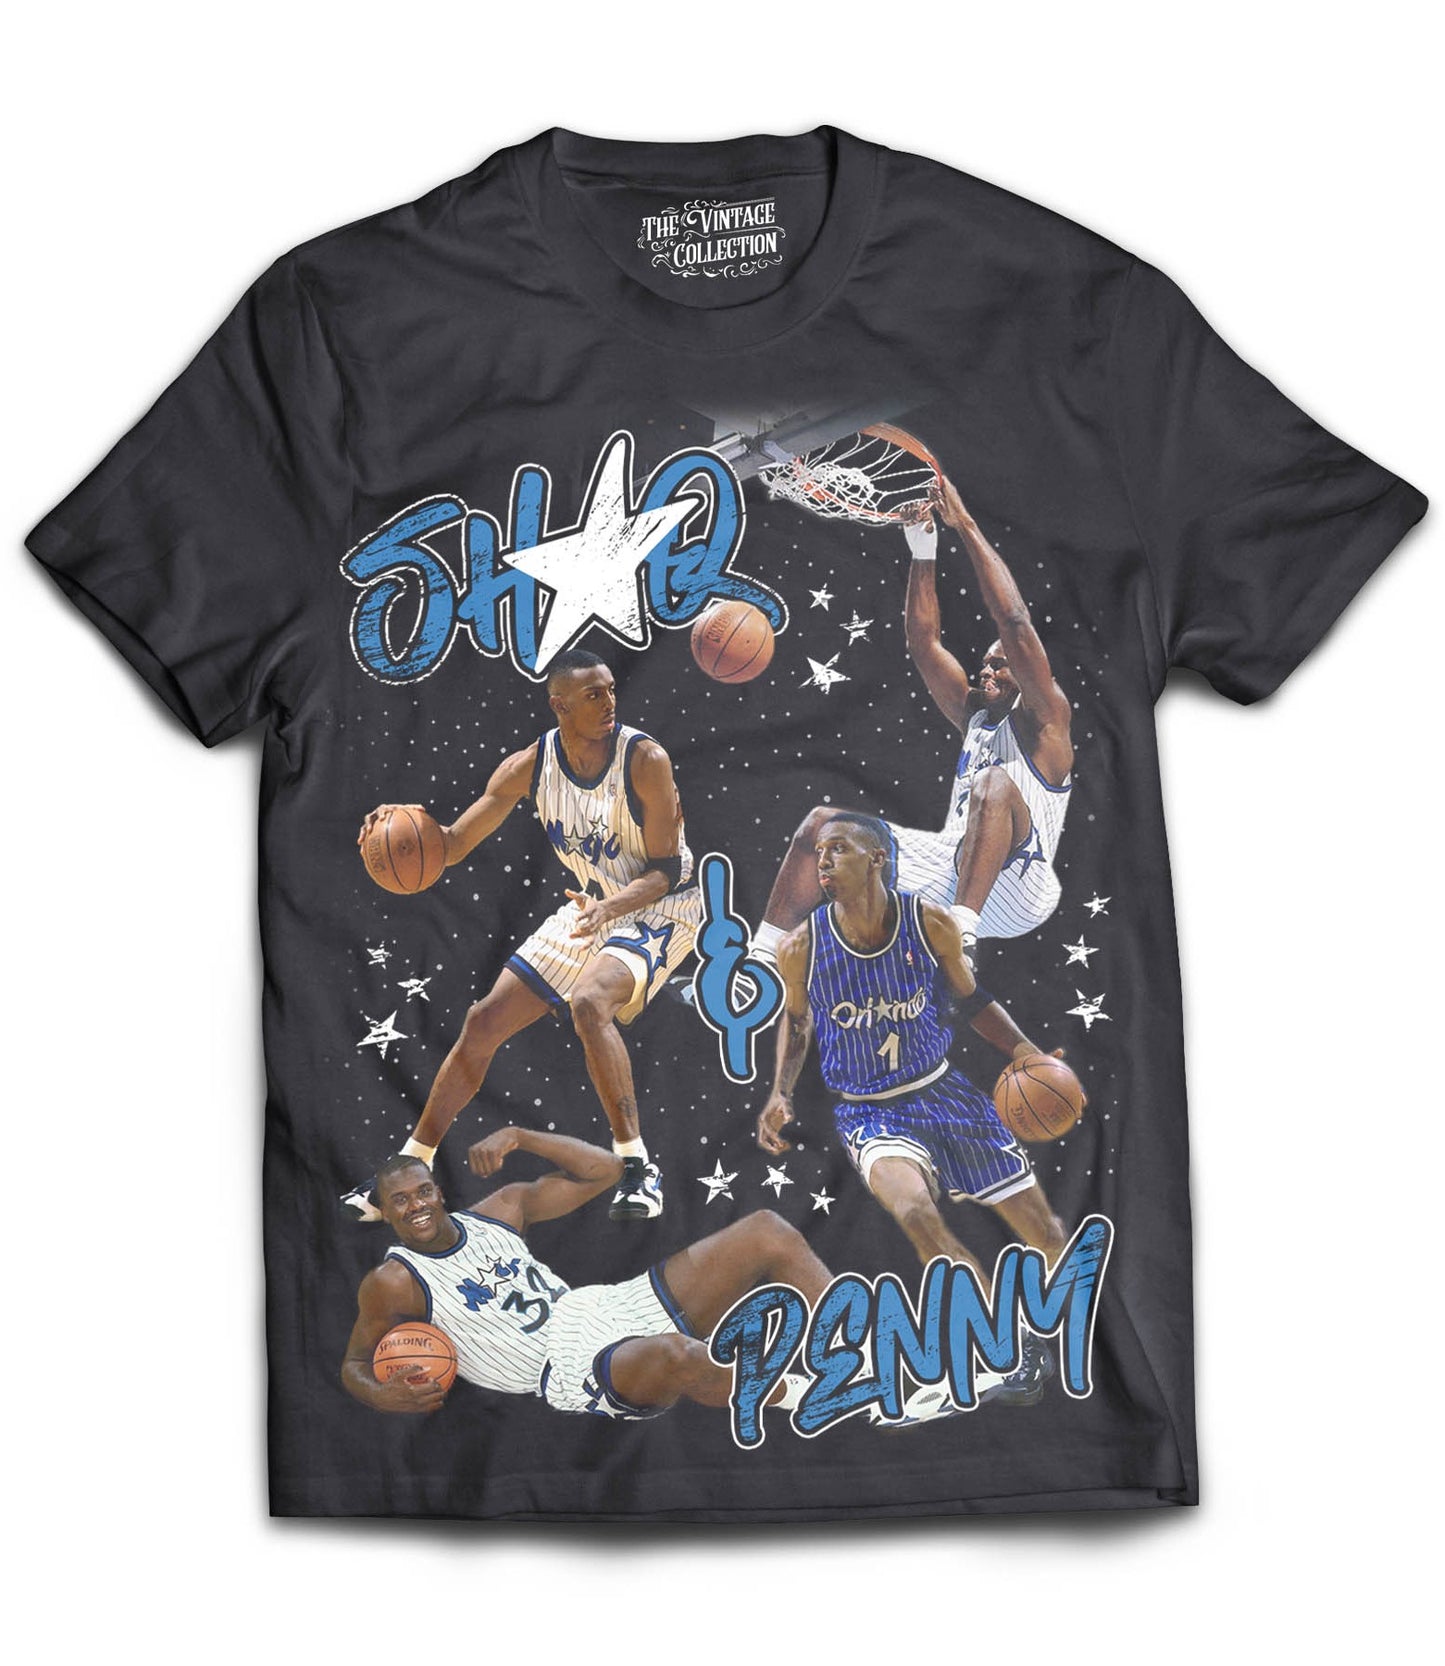 Shaq & Penny Tribute T-Shirt